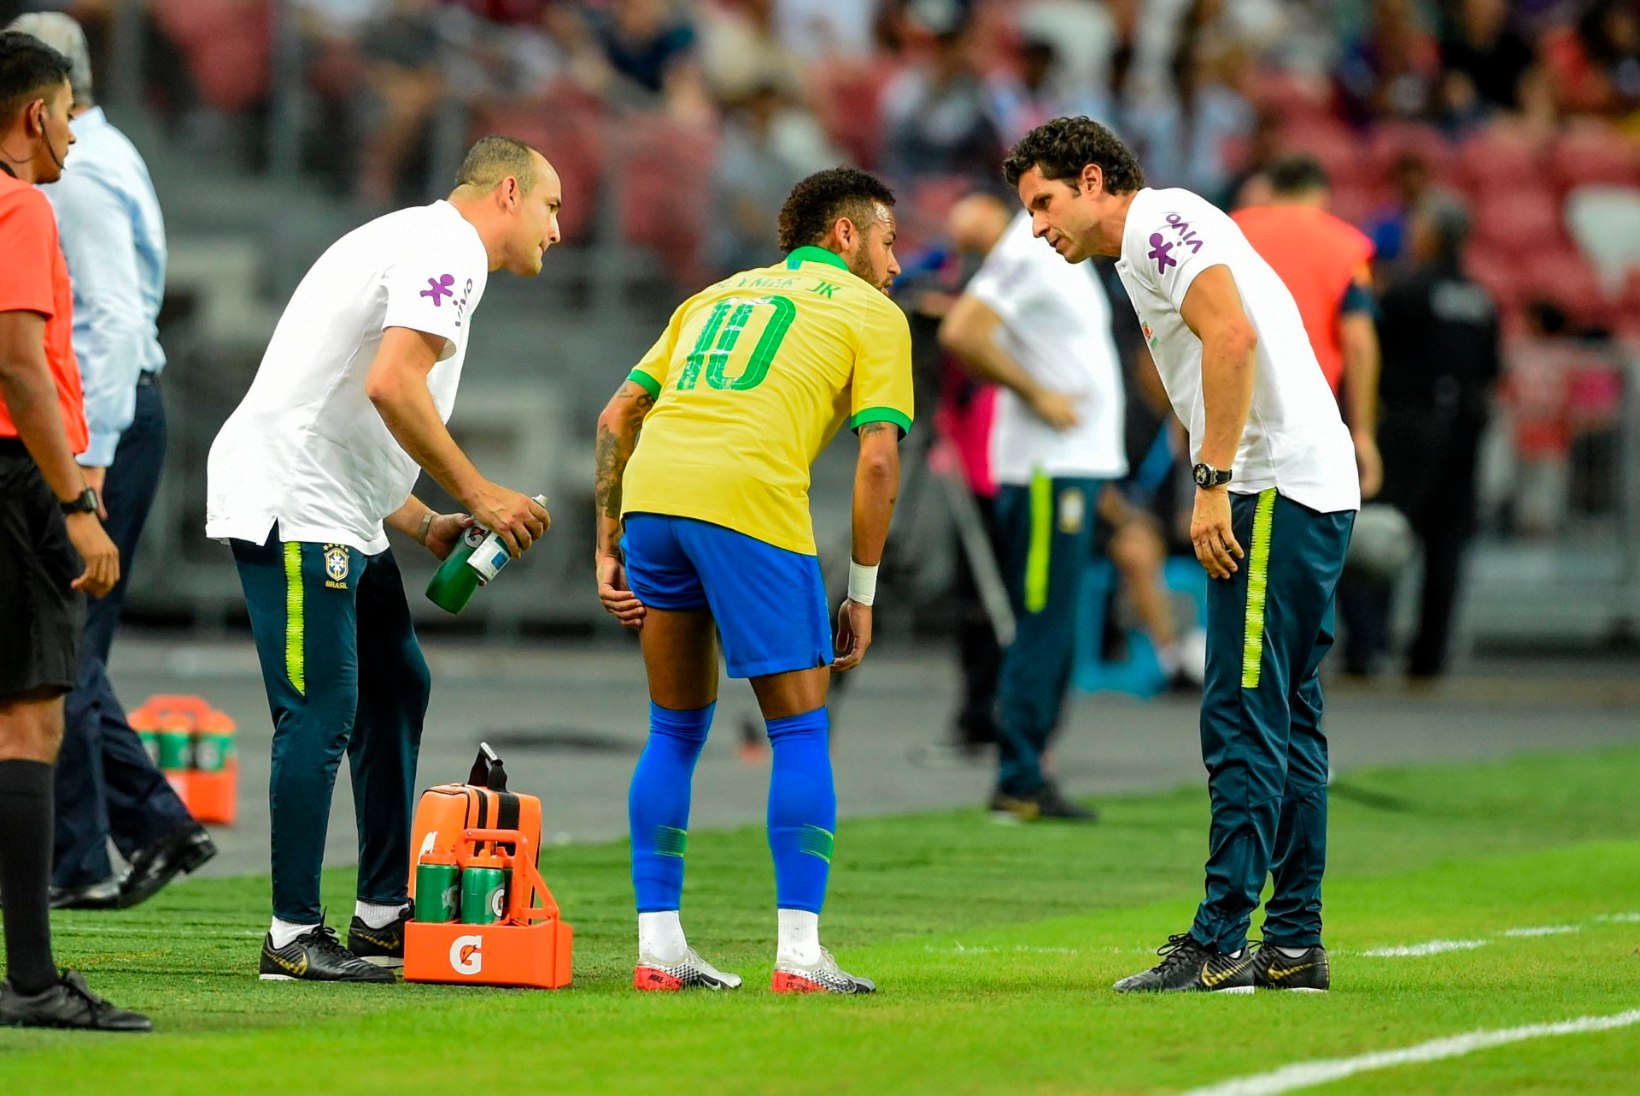 Taas vigastada saanud Neymar jääb mitmest olulisest kohtumisest eemale